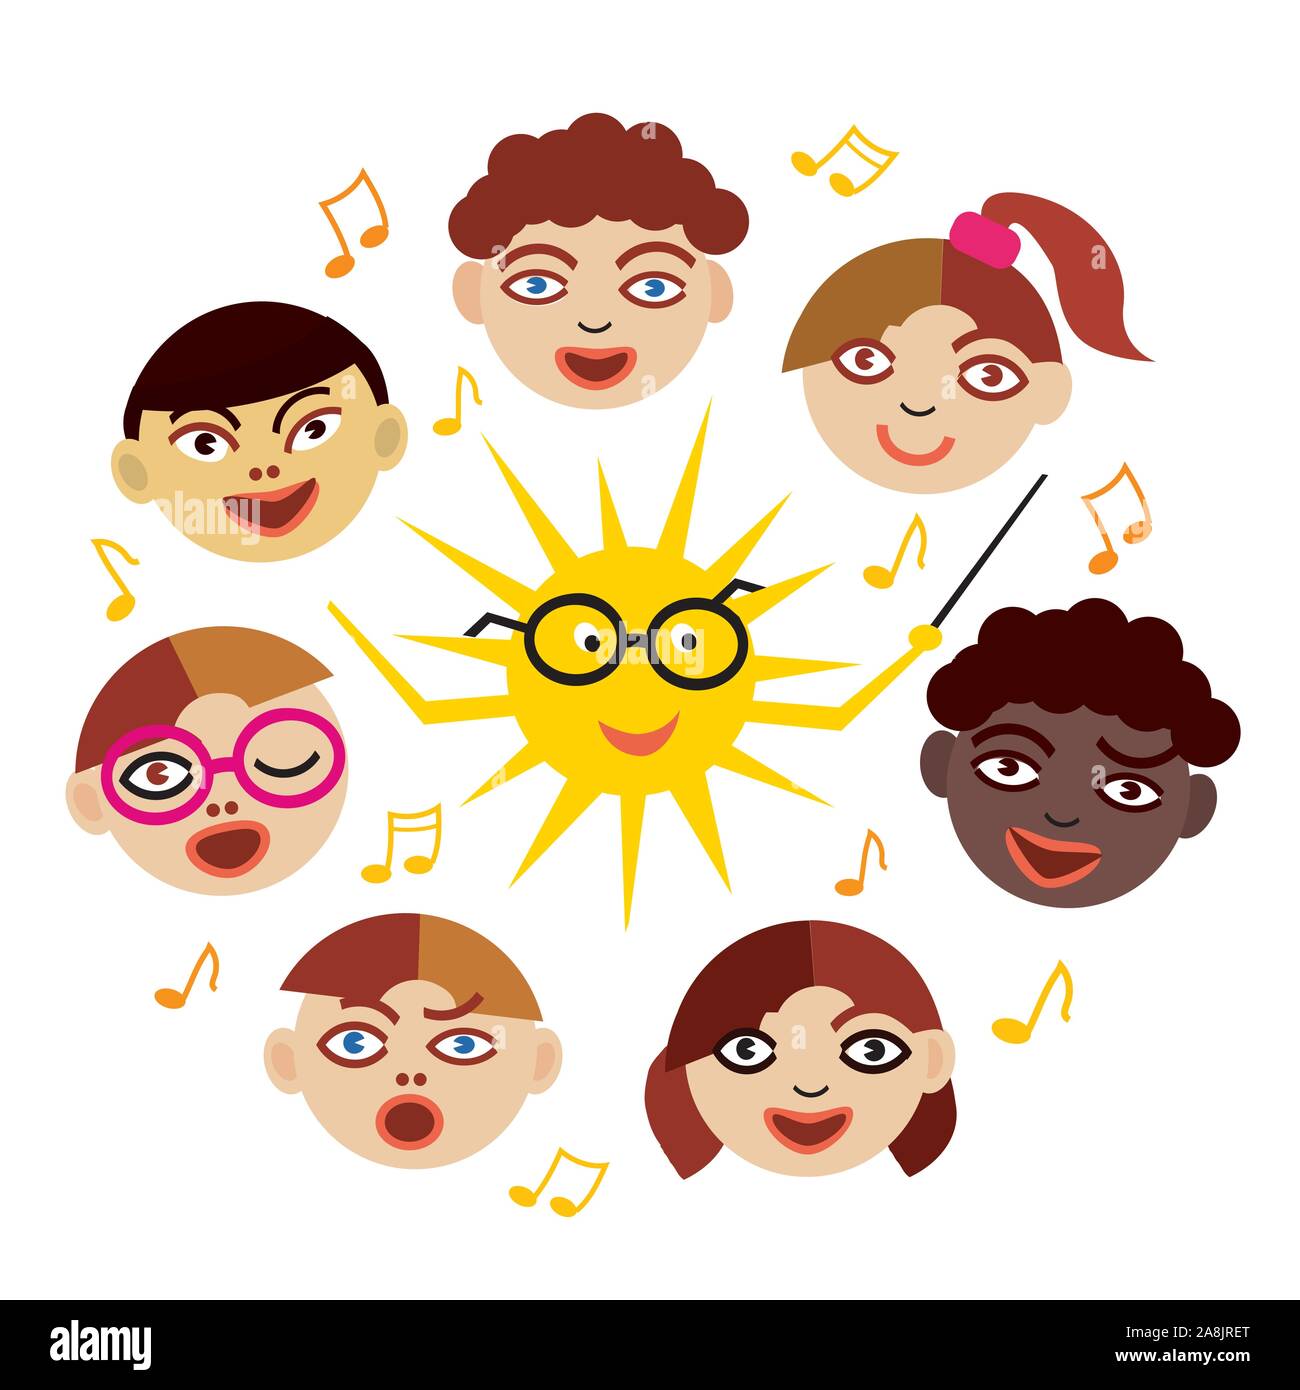 Coro dei bambini con Sun come conduttore. Illustrazione stilizzata di bambini cantano insieme come coro. Isolato su sfondo bianco.Vettore disponibile. Illustrazione Vettoriale